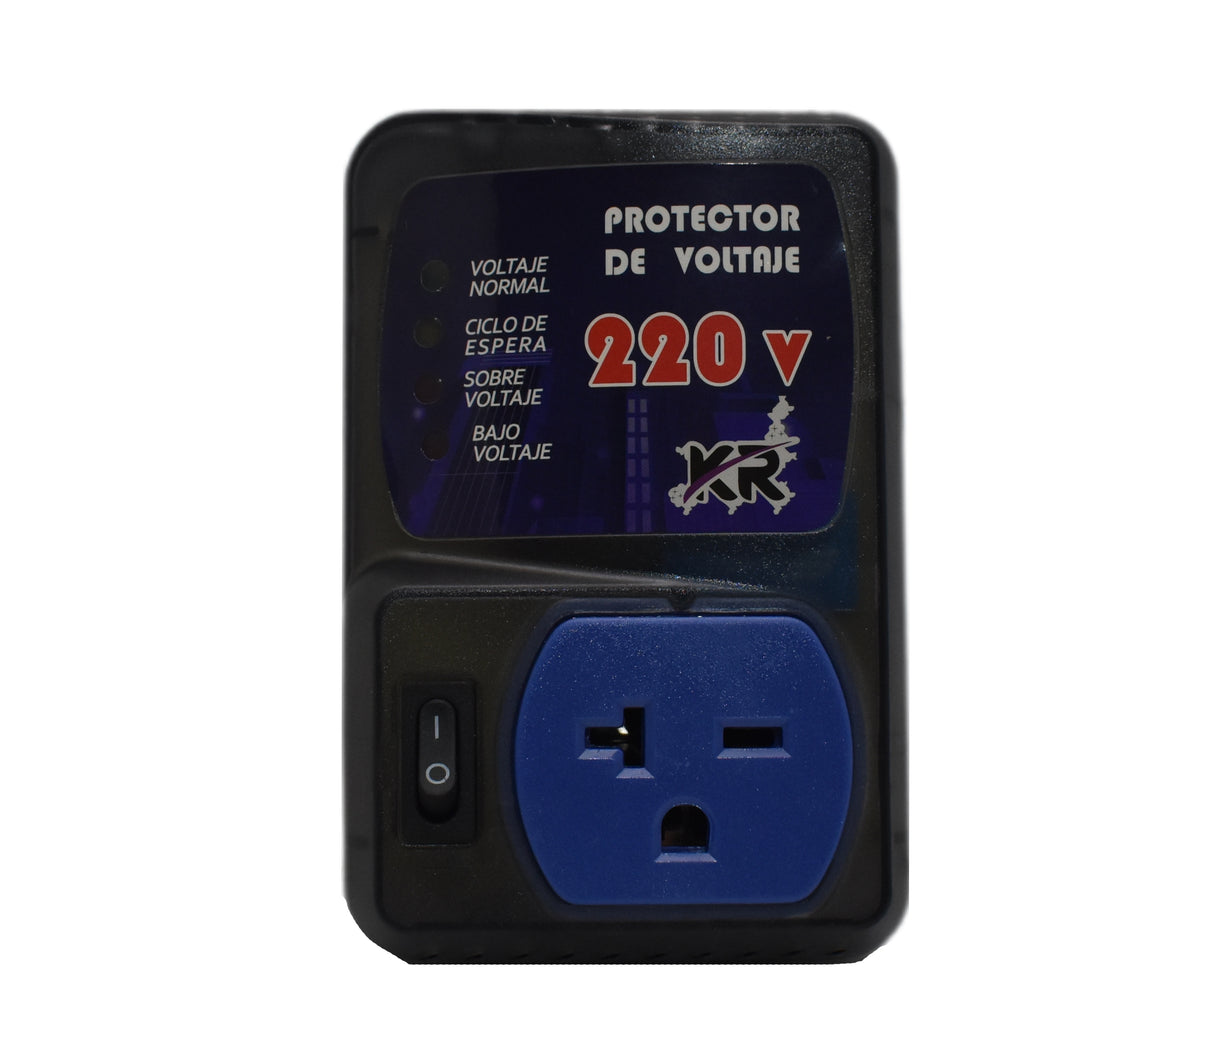 Protector de a/a refrigeradores enchufe 220V Kr Plus